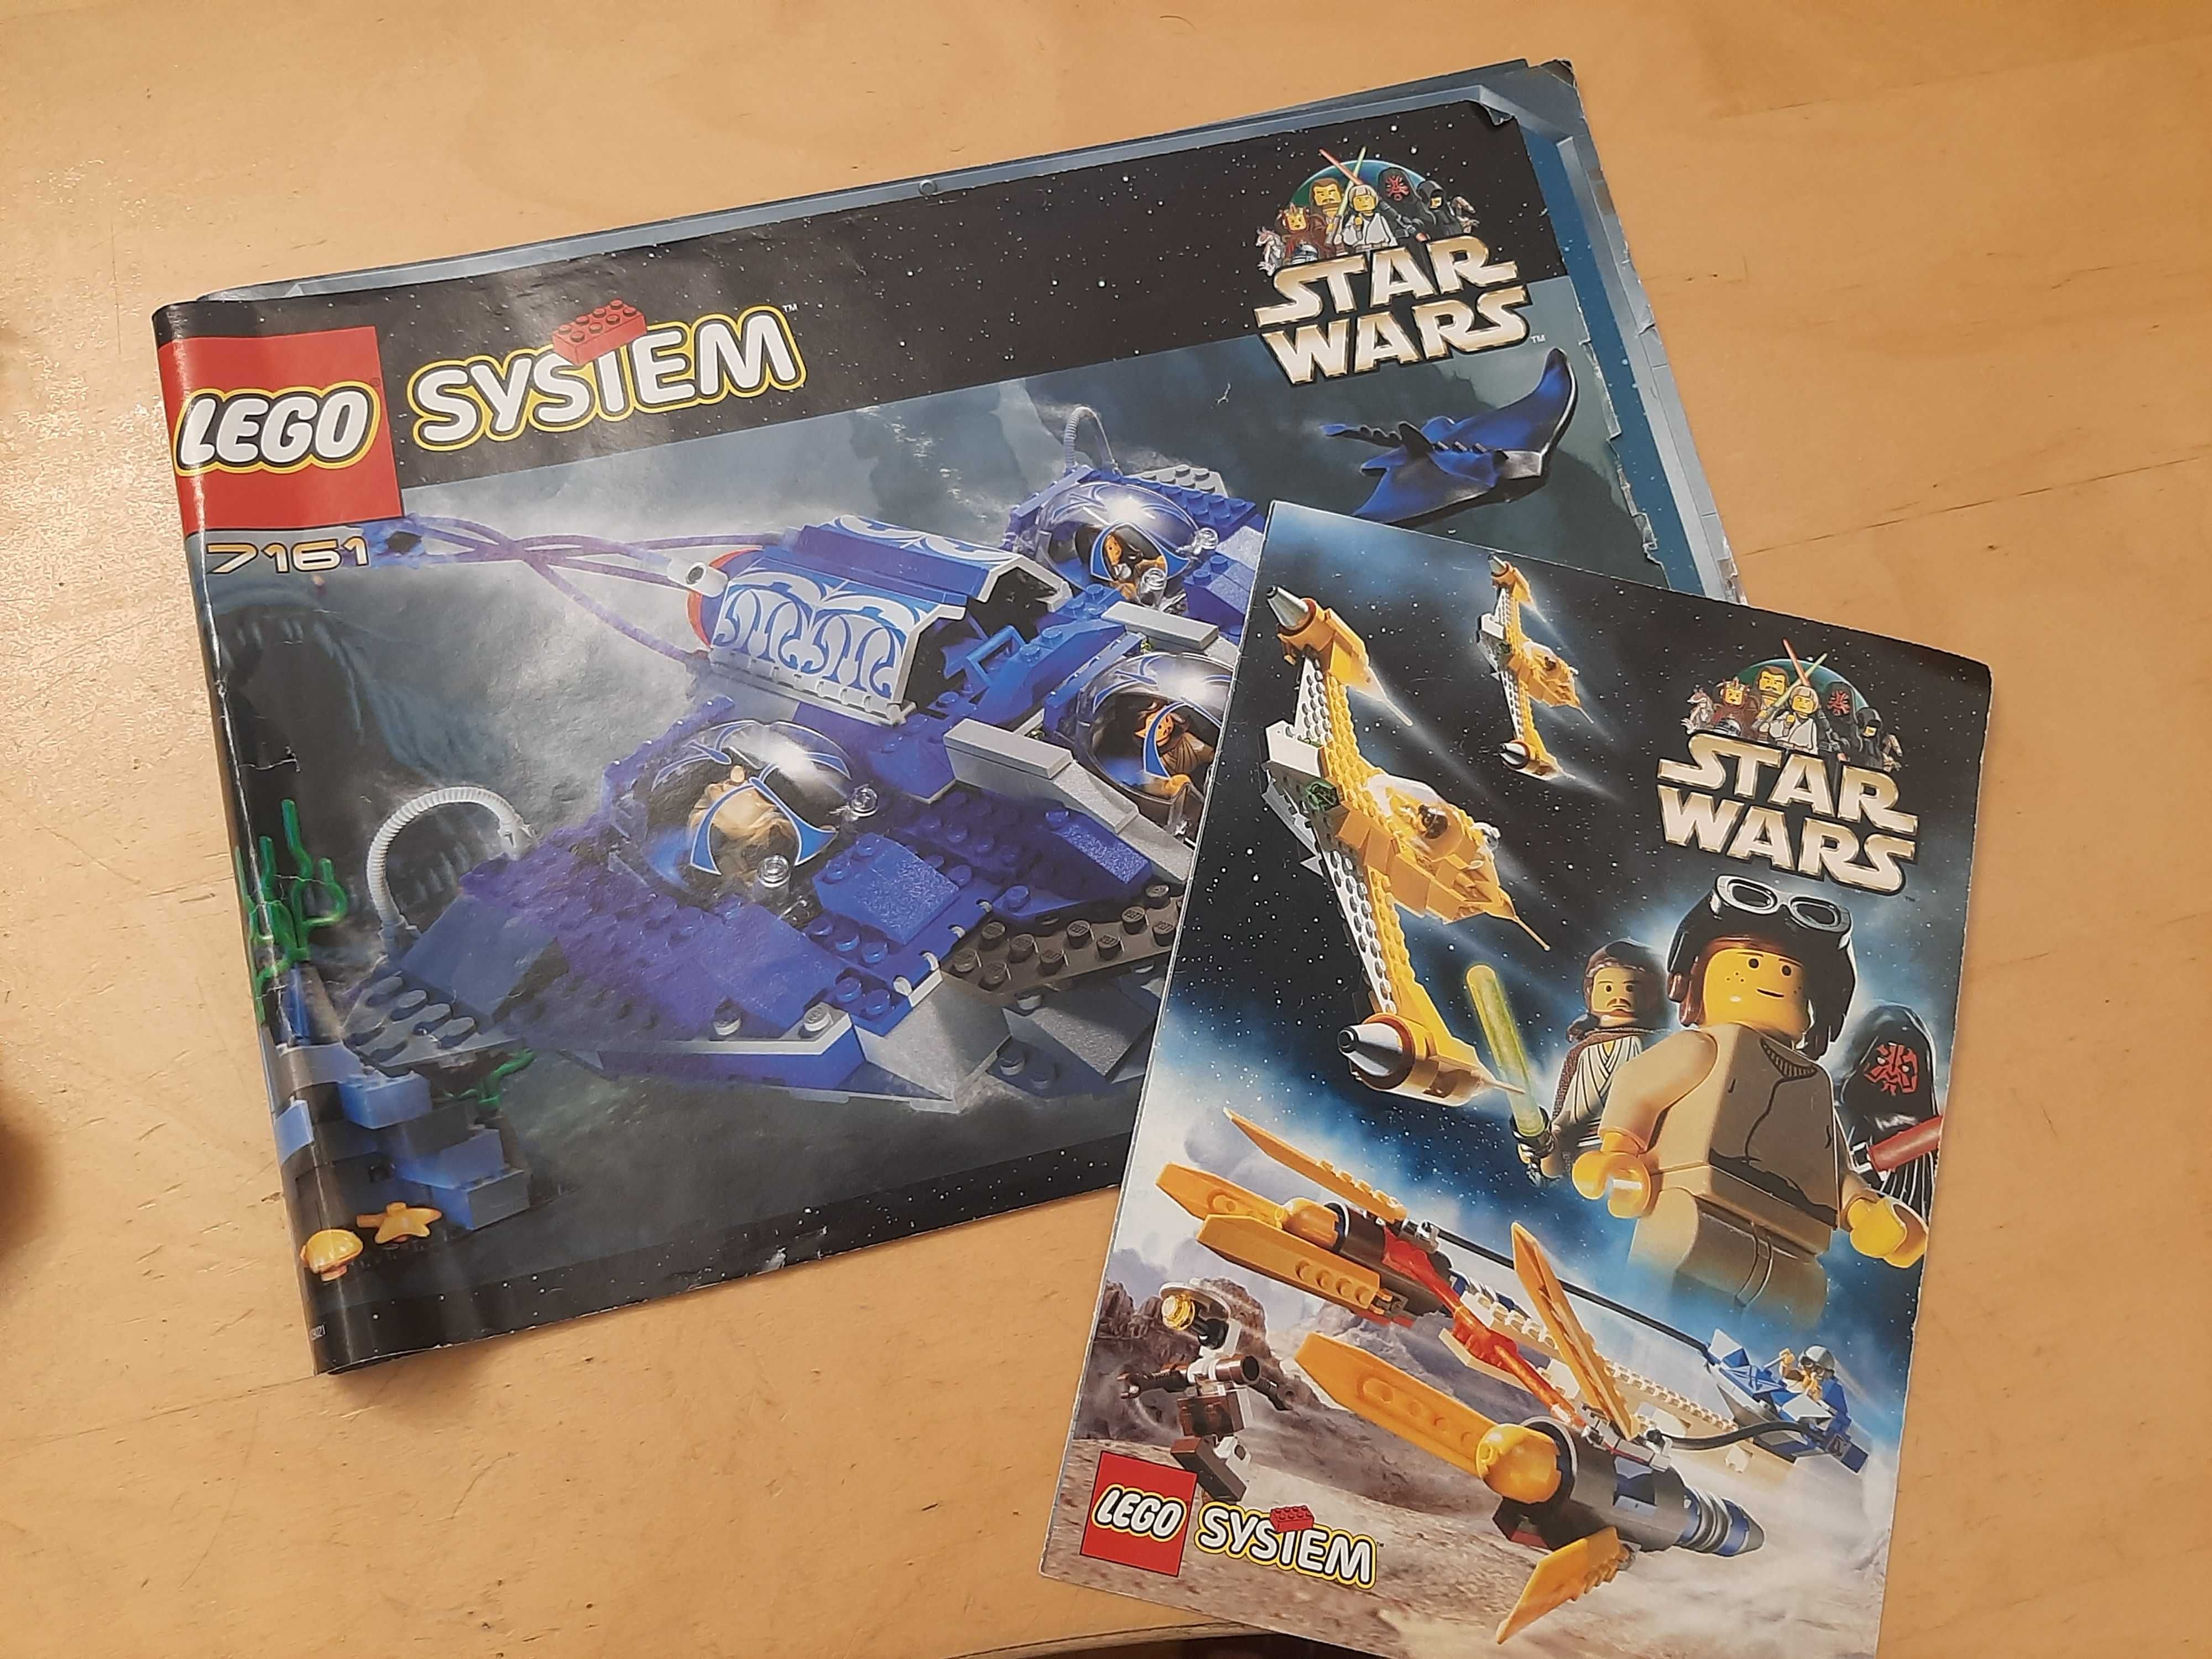 LEGO 7161 Star Wars Gungan Sub